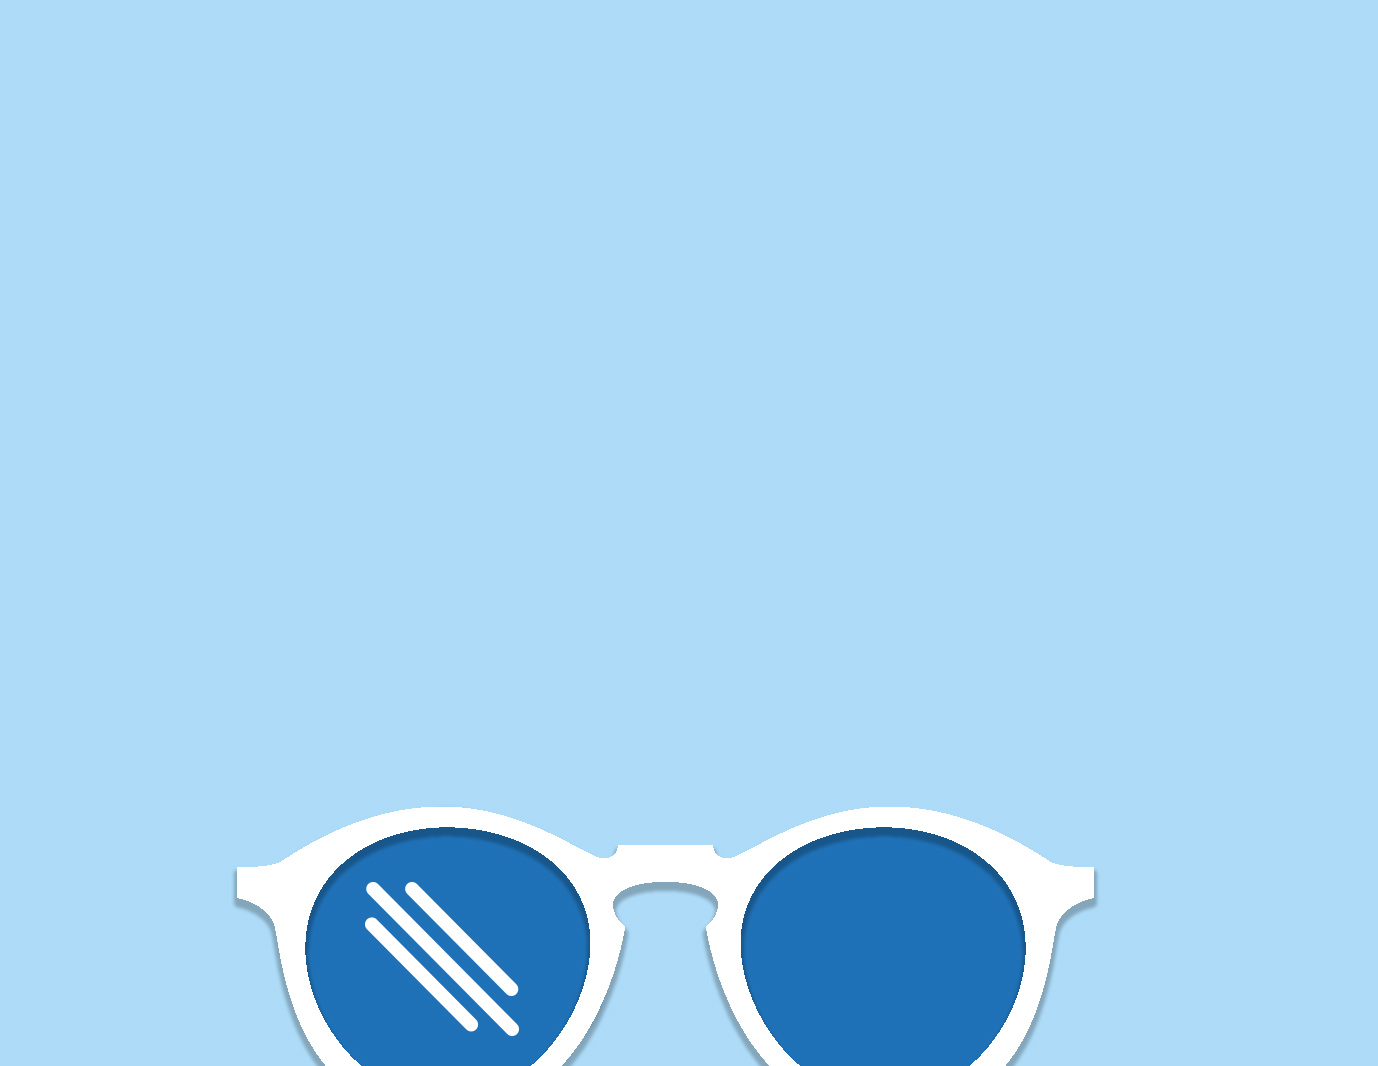 Illustration of Polarized Sunglasses